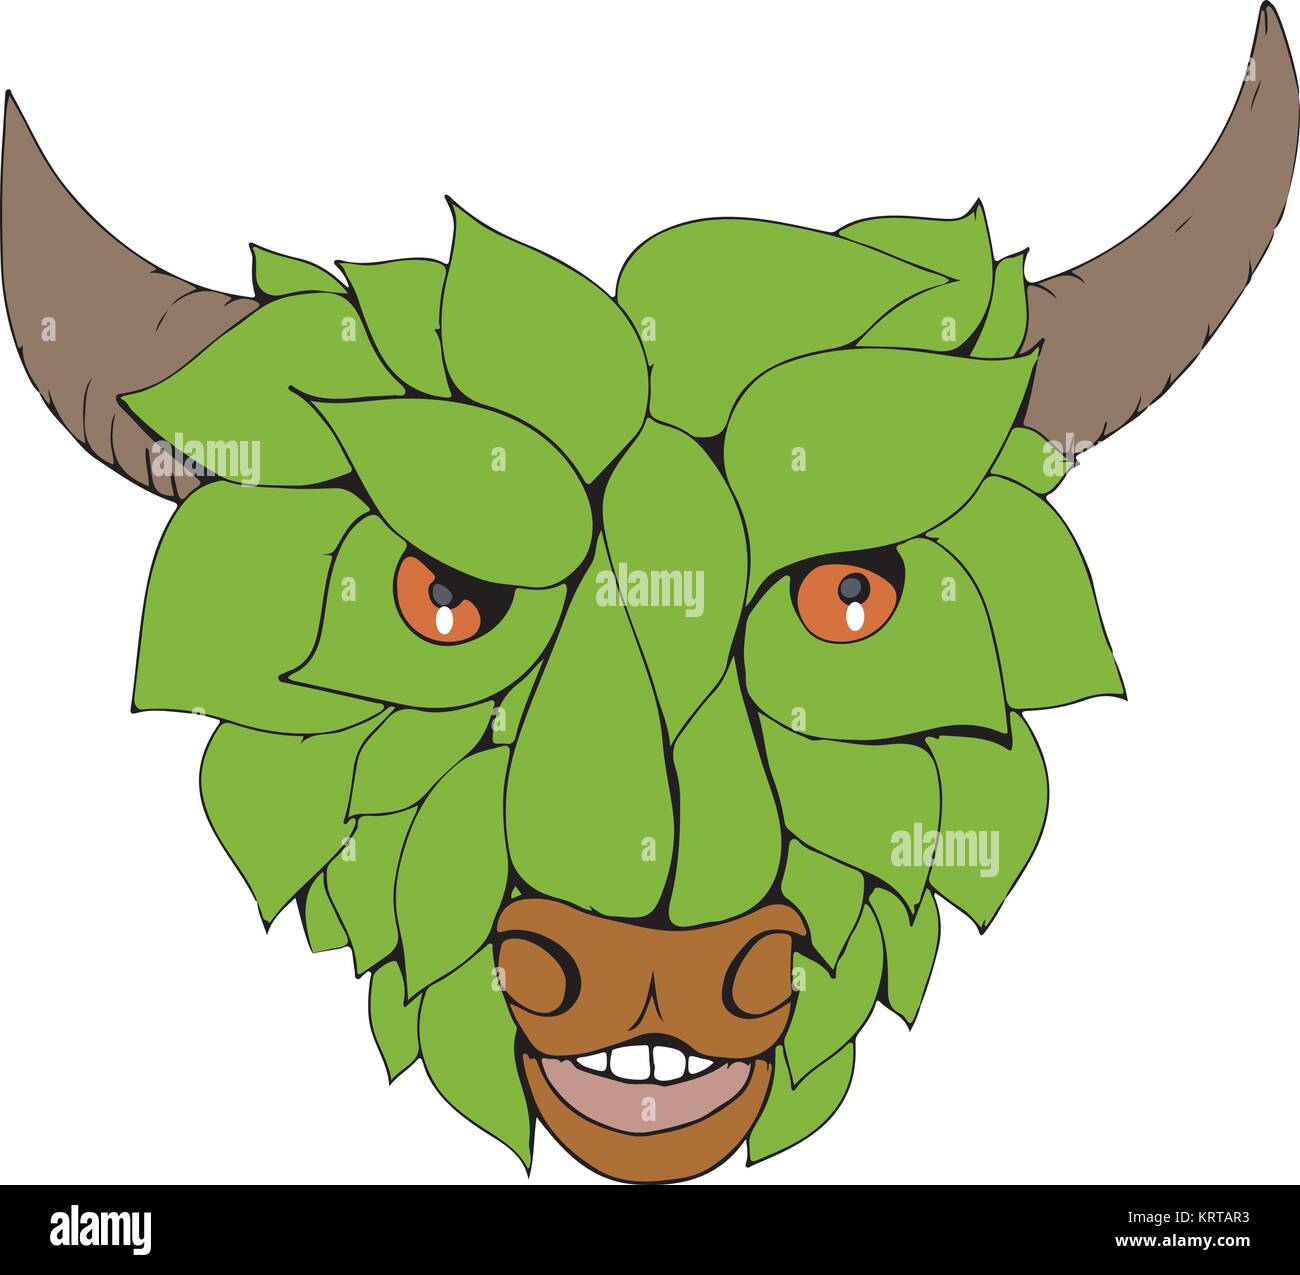 Style croquis dessin illustration d'une feuille avec Bull vert ou vert feuilles formant la tête vue de l'avant sur des arrière-plan. Illustration de Vecteur